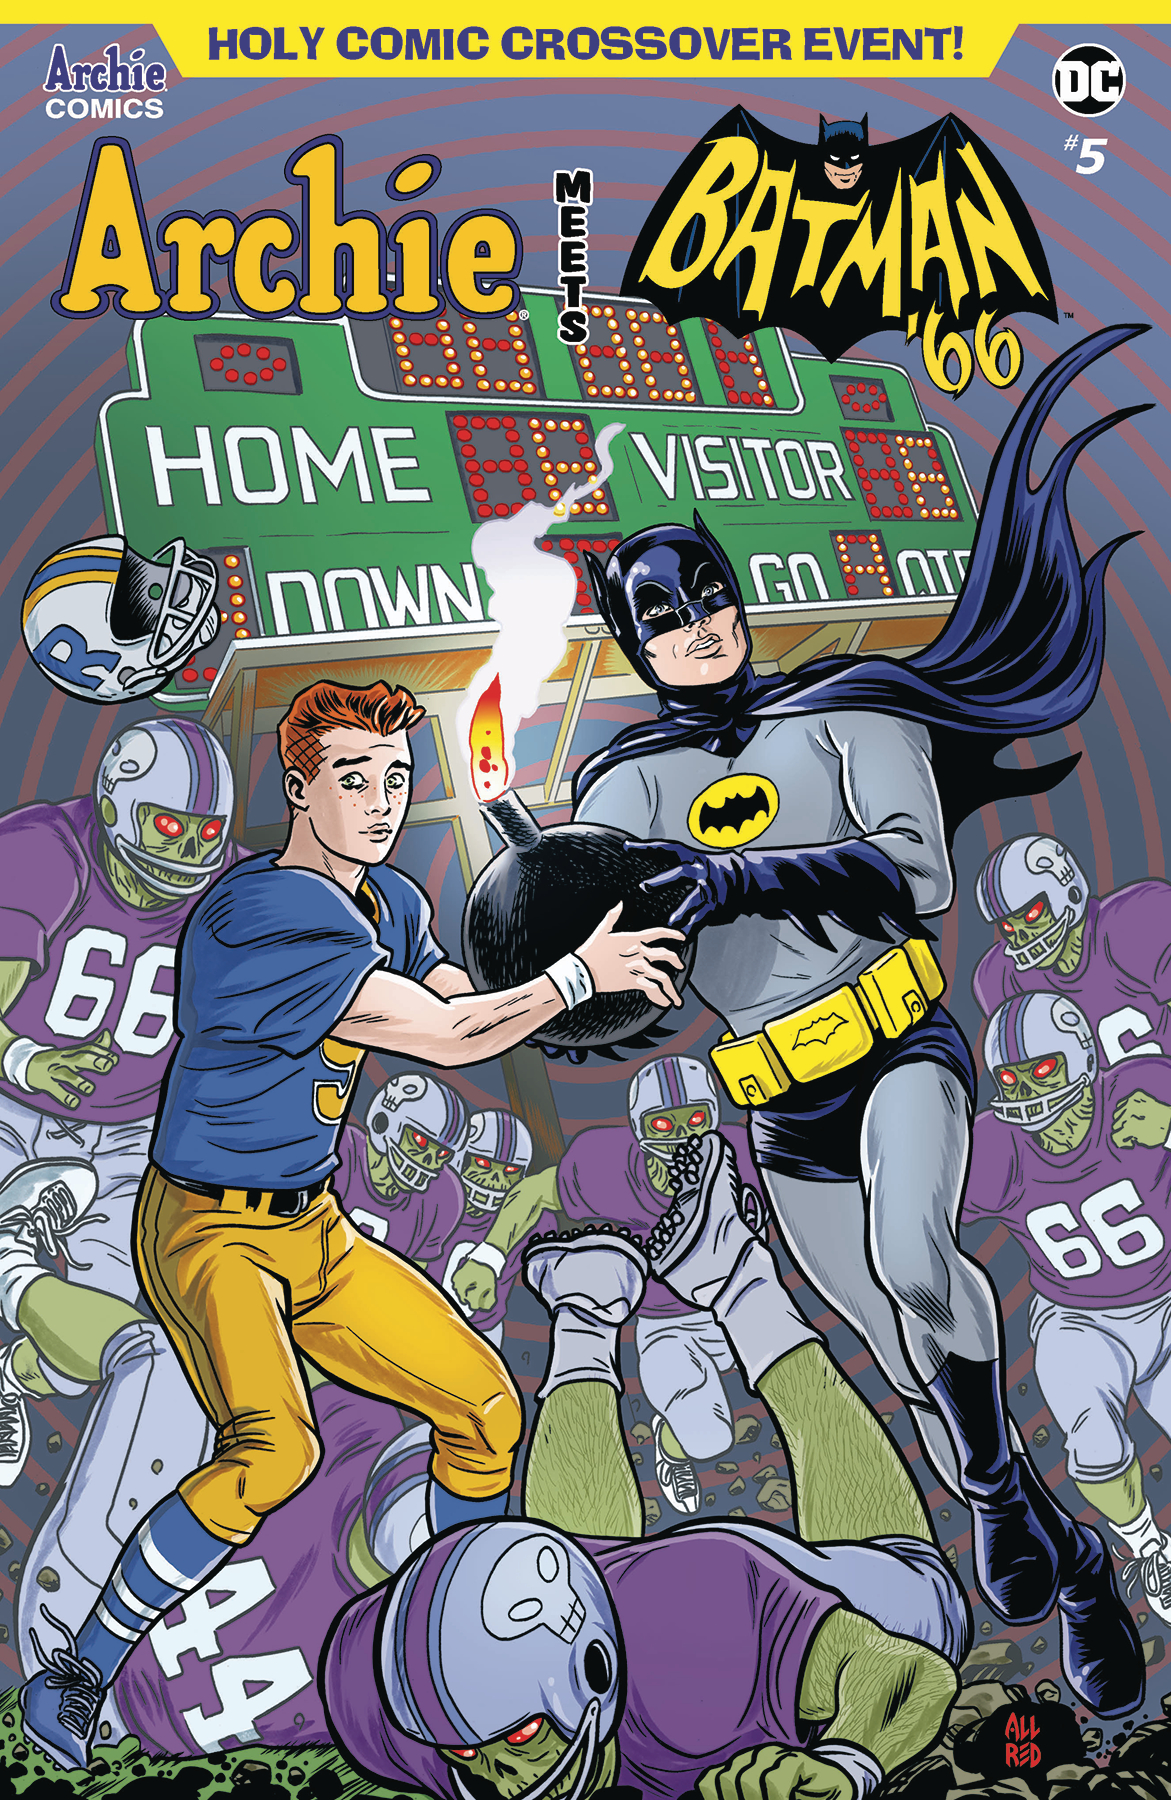 Archie Meets Batman 66 no. 5 (2018 Series)